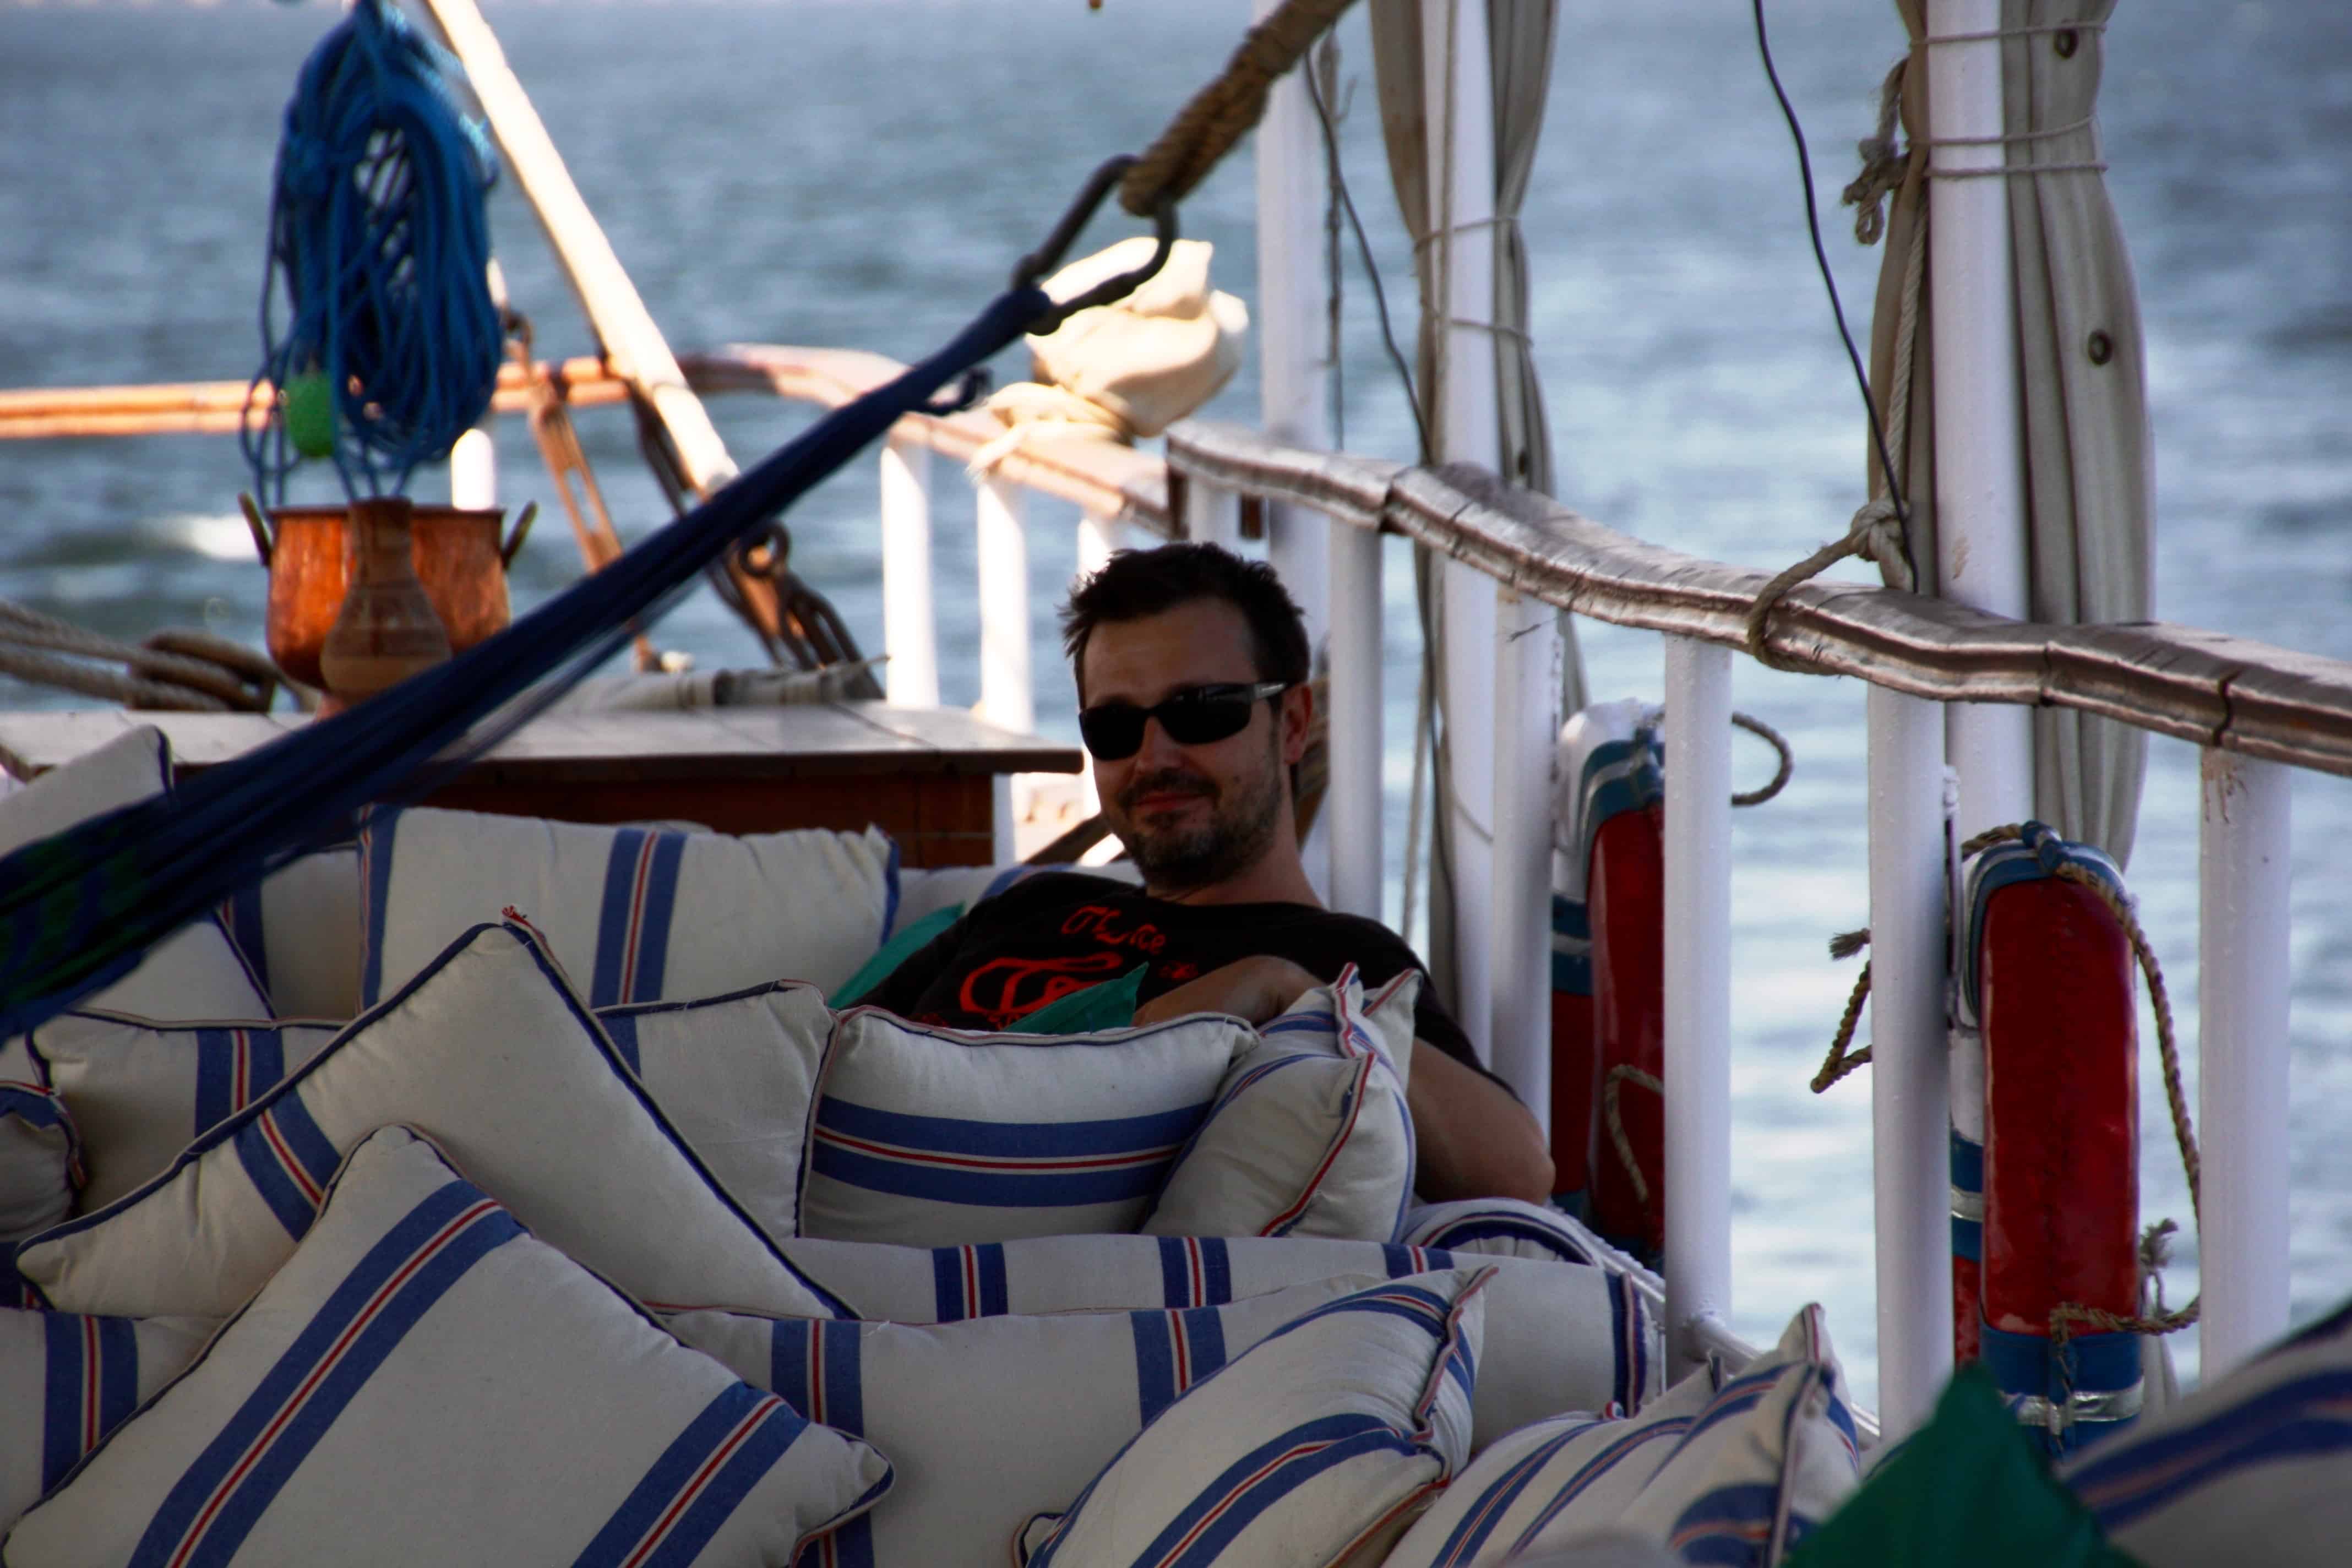 Nile cruising aboard a traditional dahabiya boat with Nour el-Nil